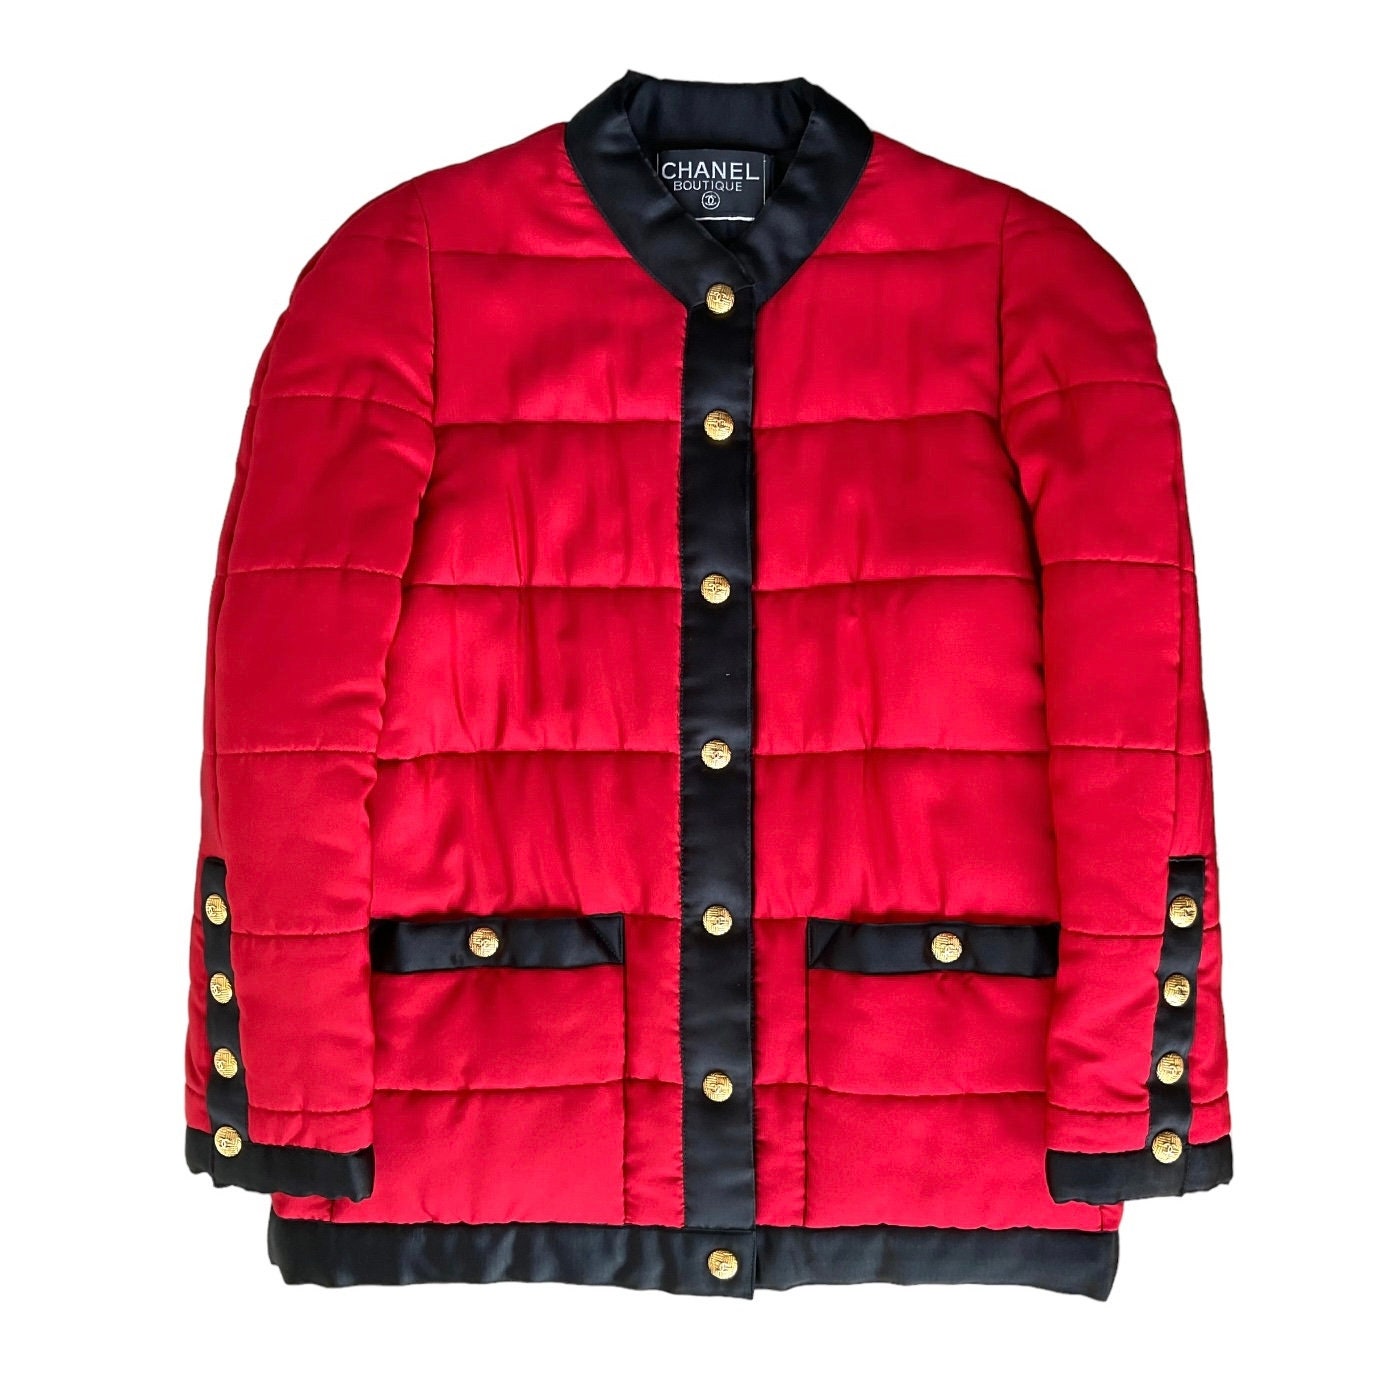 Chanel bomber jacket - Gem